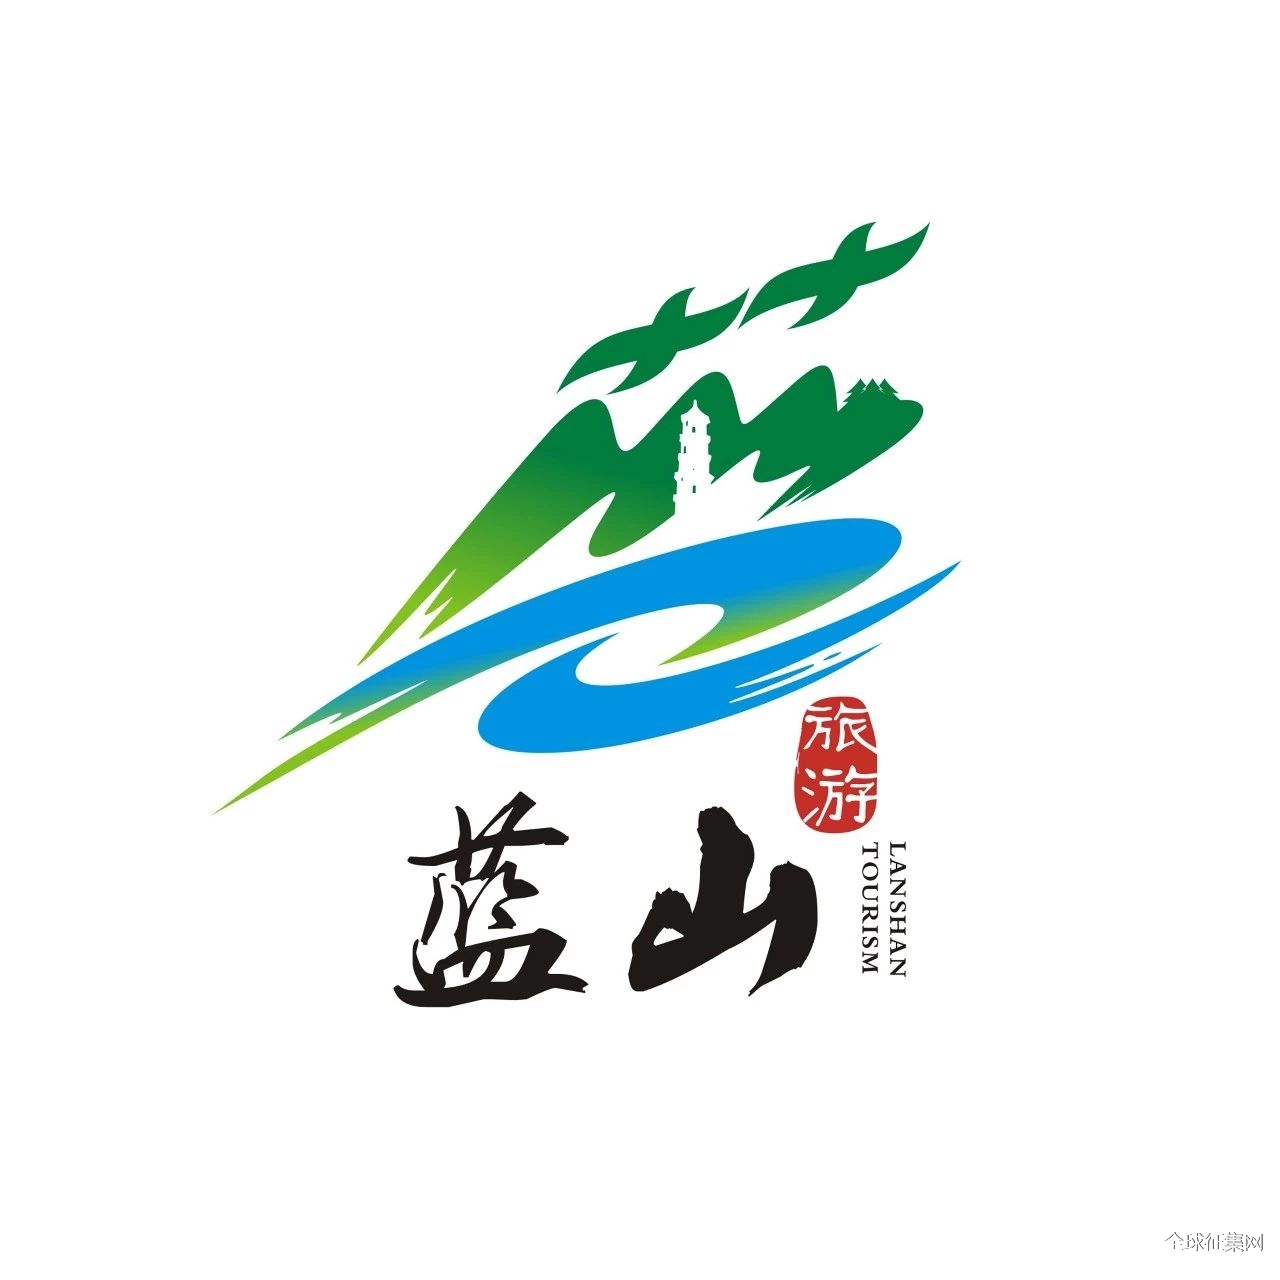 蓝山县旅游形象标识（Logo） 和宣传用语征集投票-设计揭晓-设计大赛网